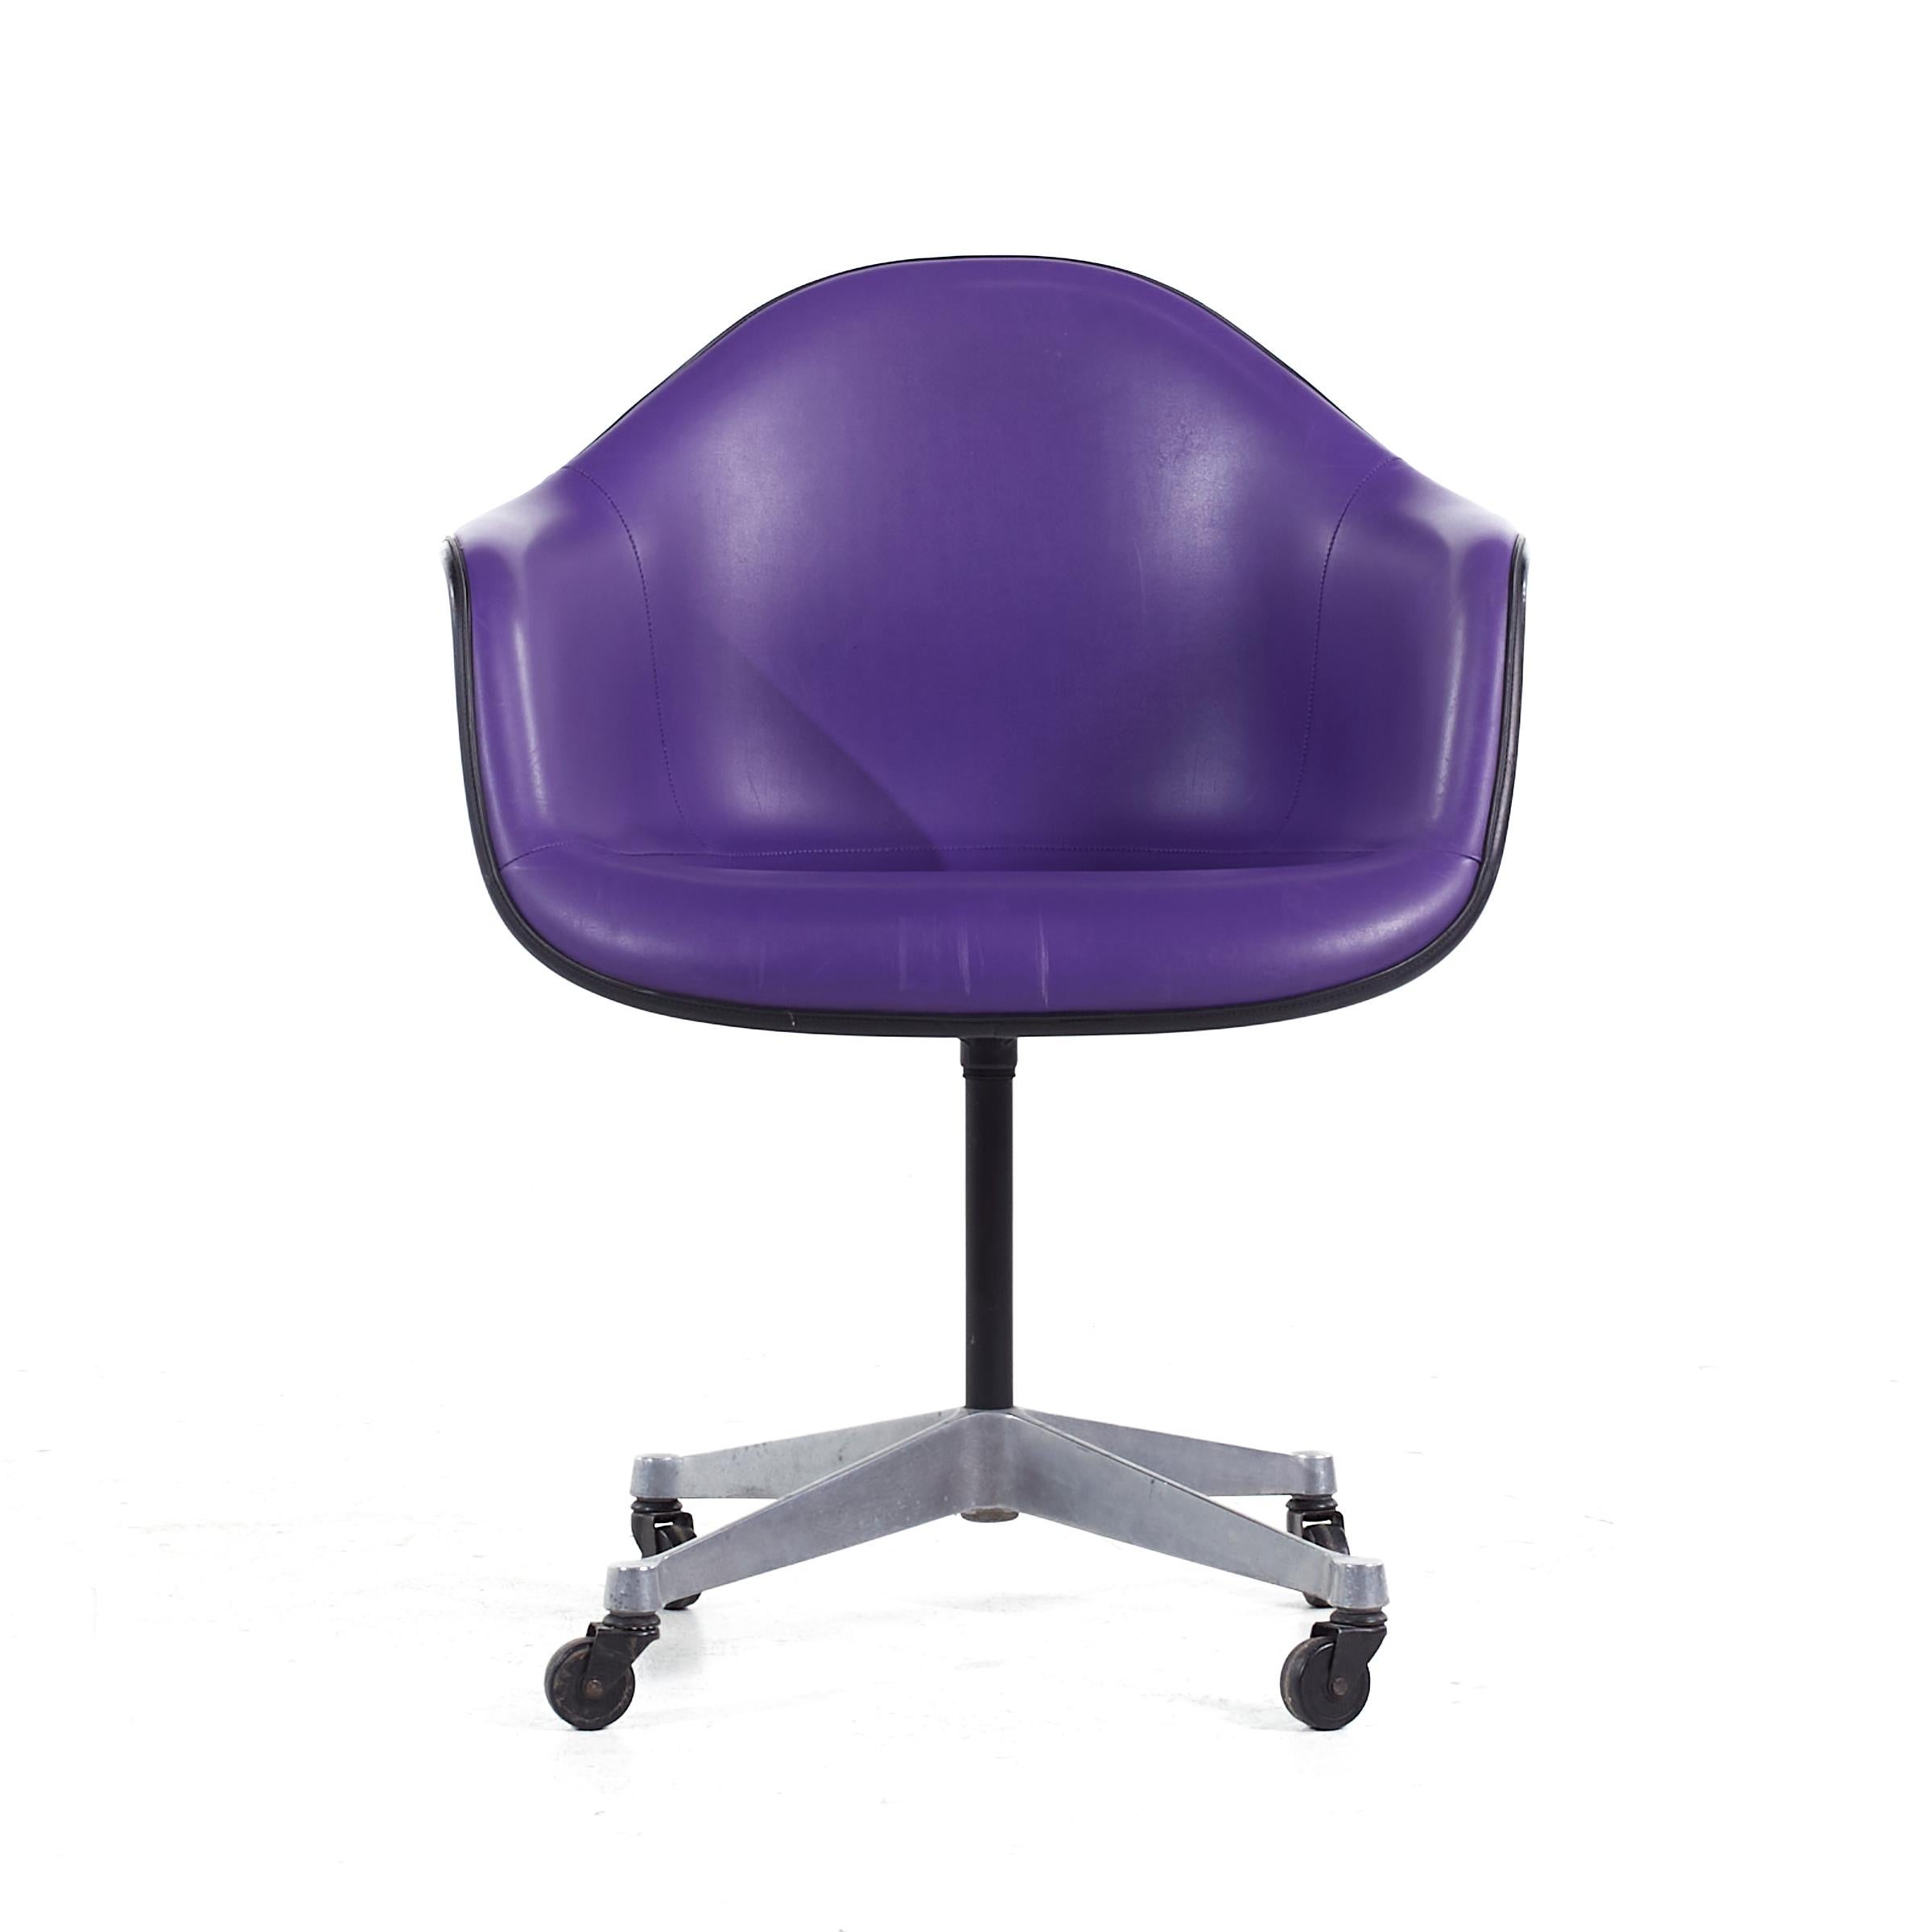 Eames for Herman Miller Mid Century Purple Fauteuil de bureau pivotant en fibre de verre rembourré

Cette chaise de bureau mesure : 25,5 de large x 24 de profond x 32,75 de haut, avec une hauteur d'assise de 18,5 et une hauteur